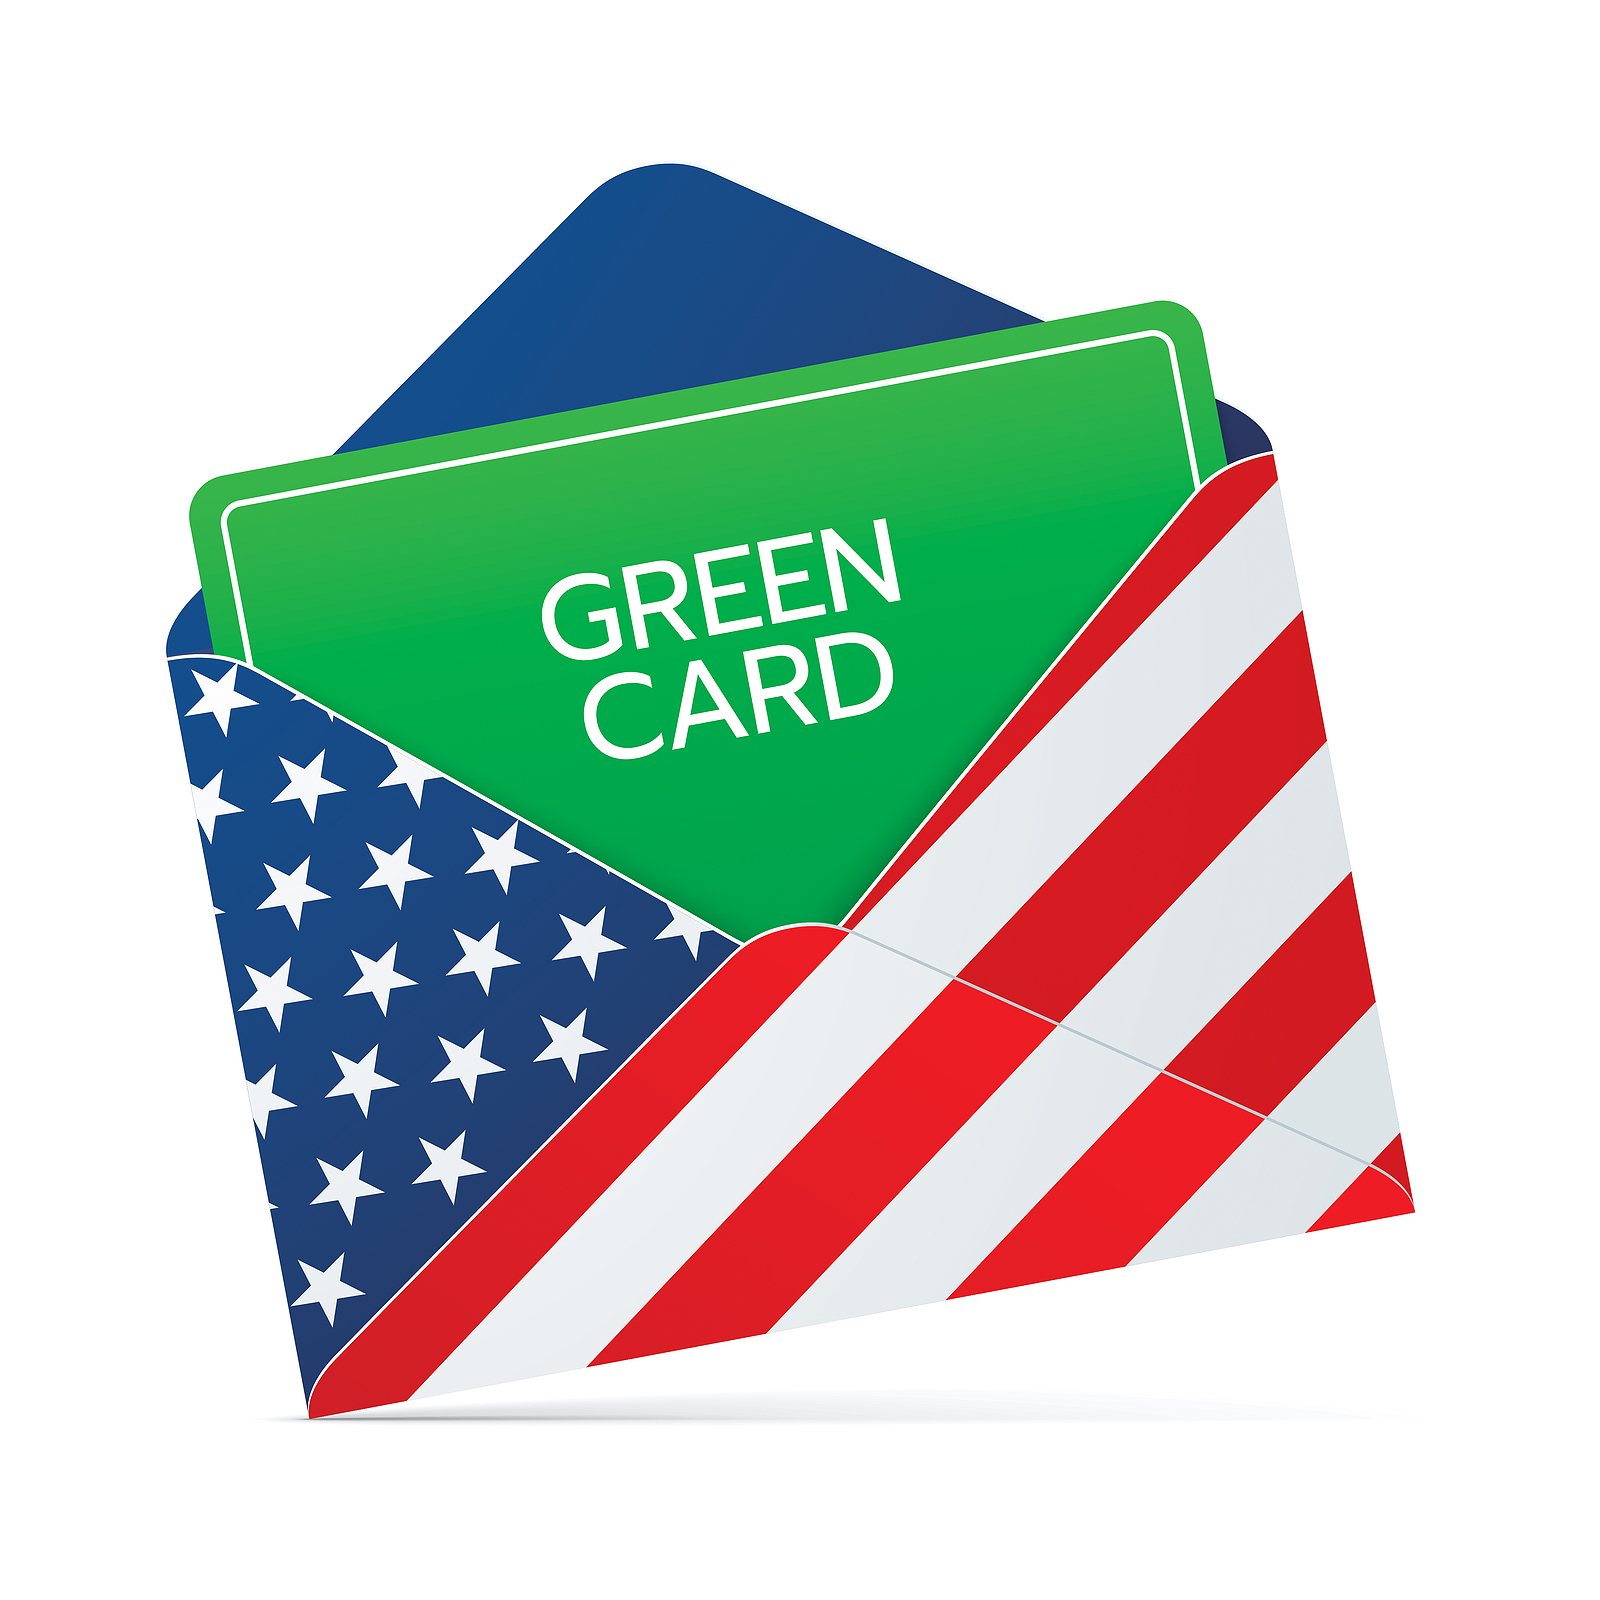 Green Card logo